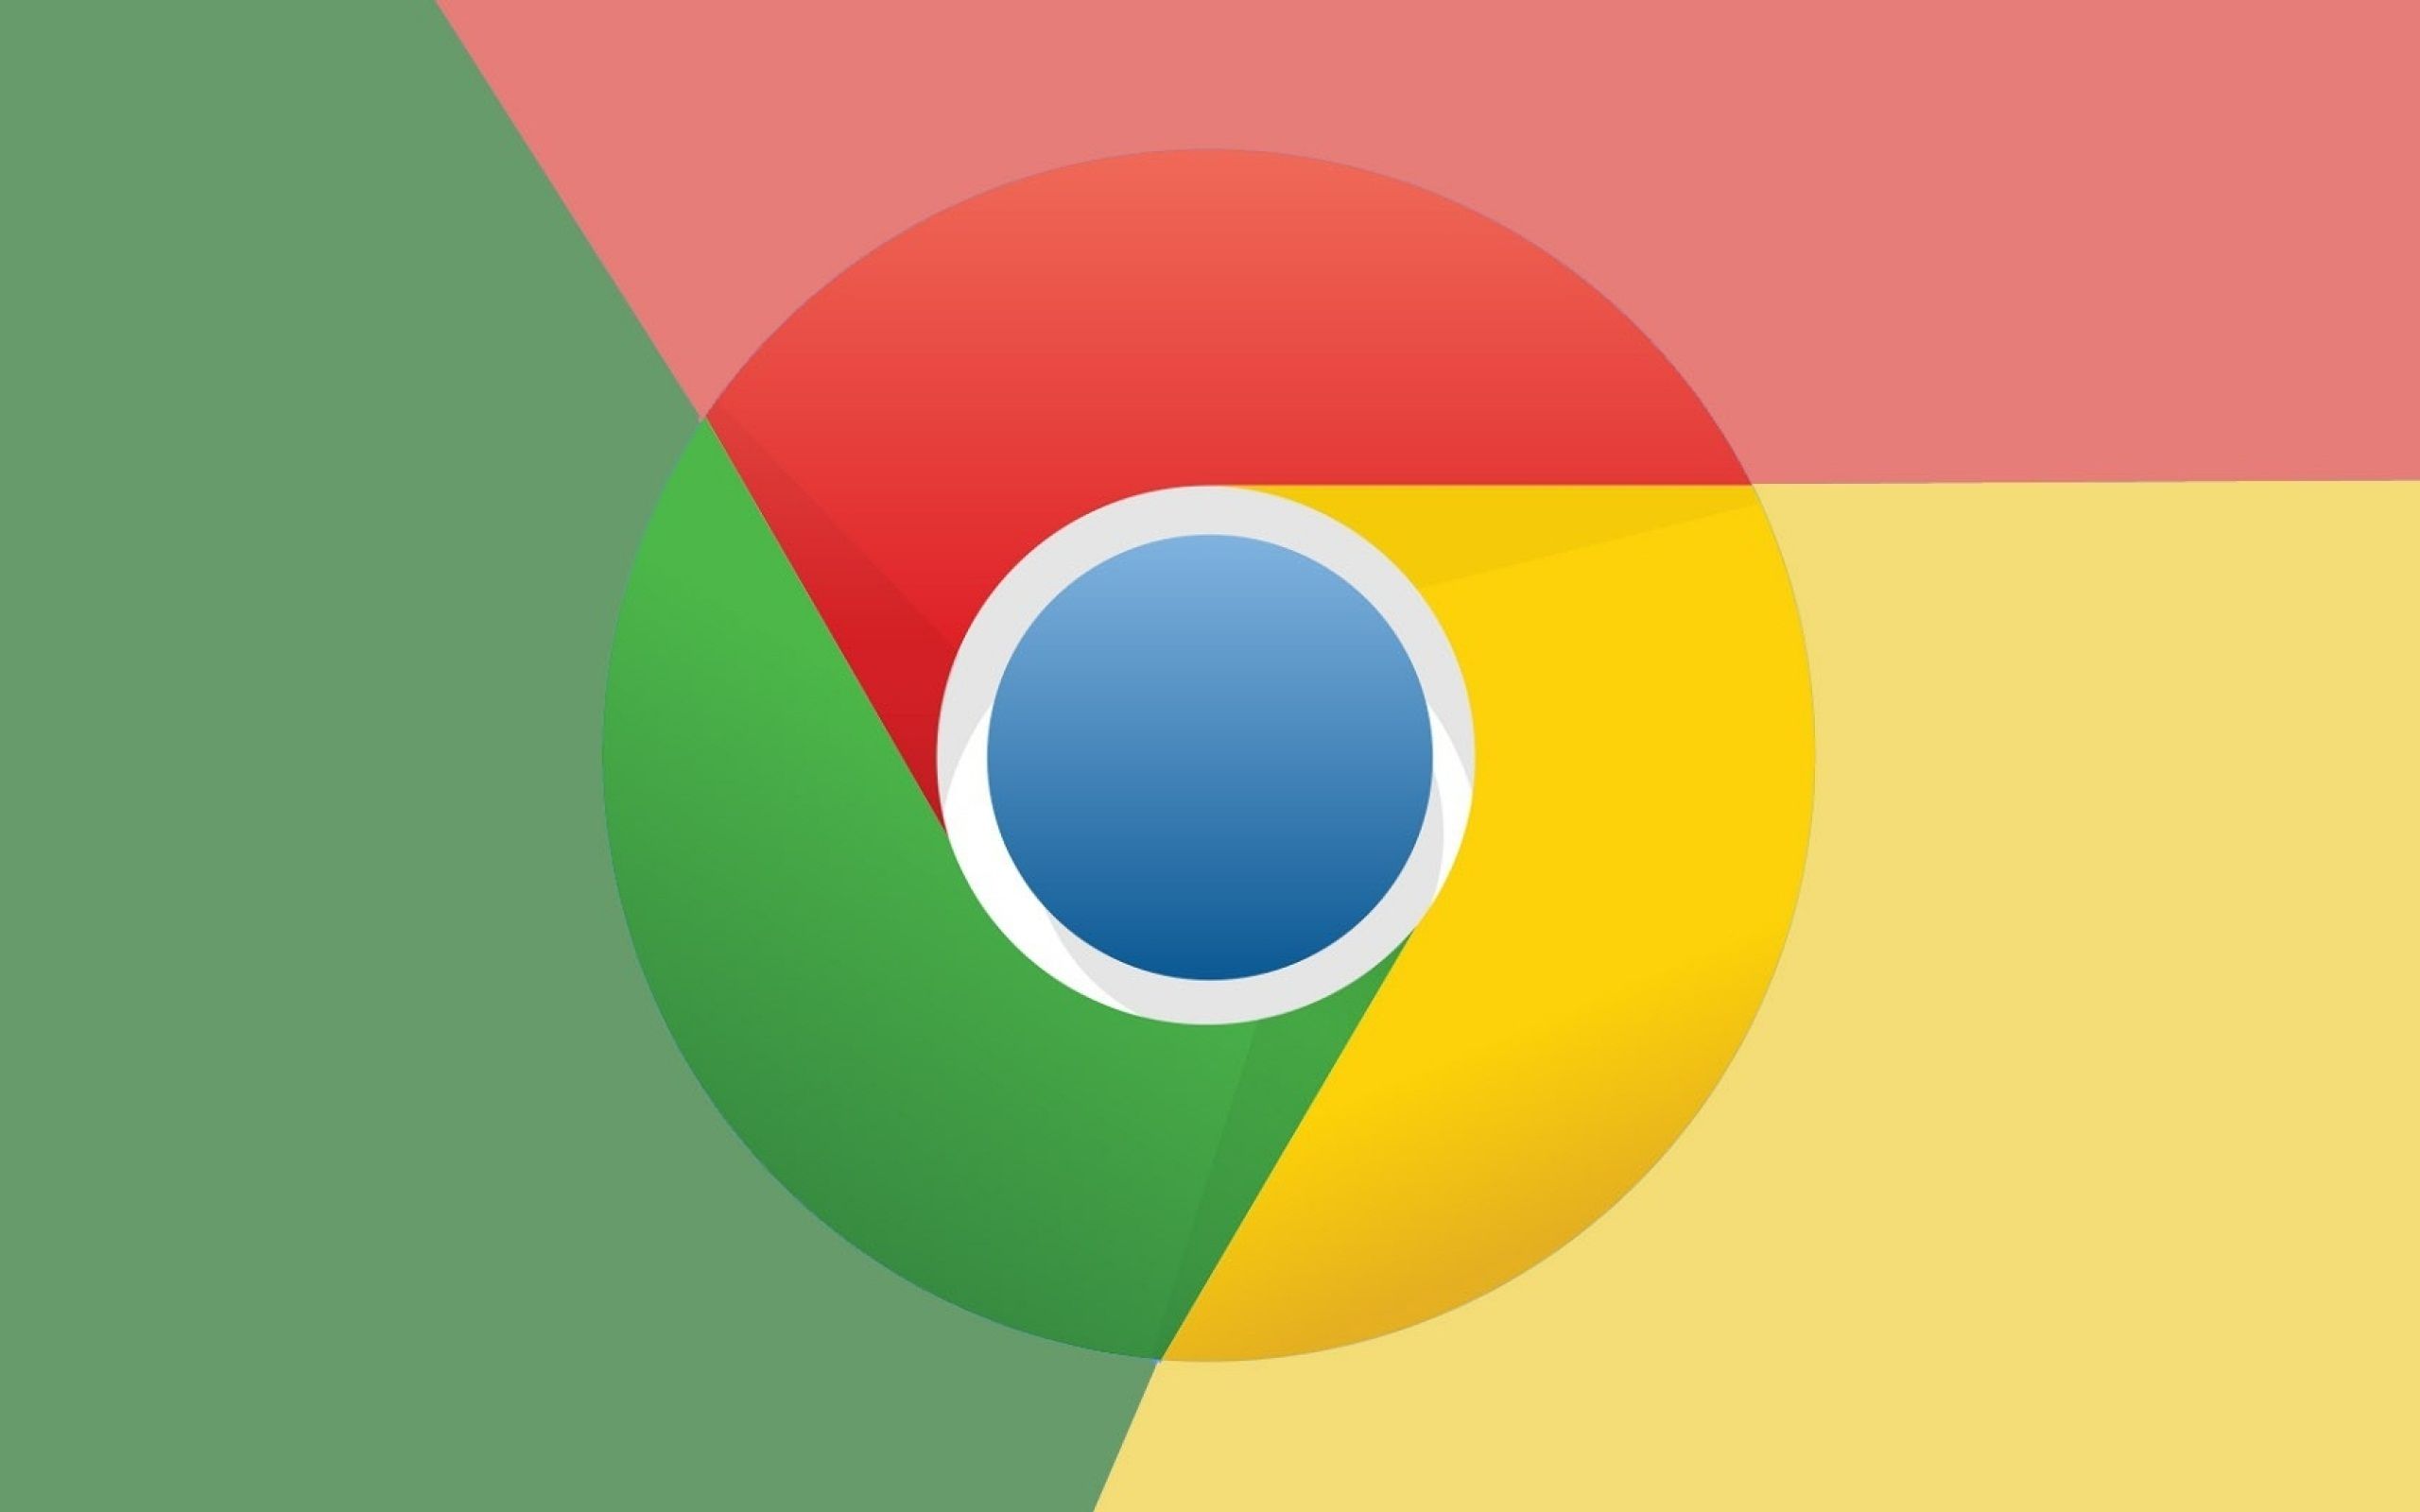 Google Chrome Logo Wallpaper, Fresh Google Chroome Image